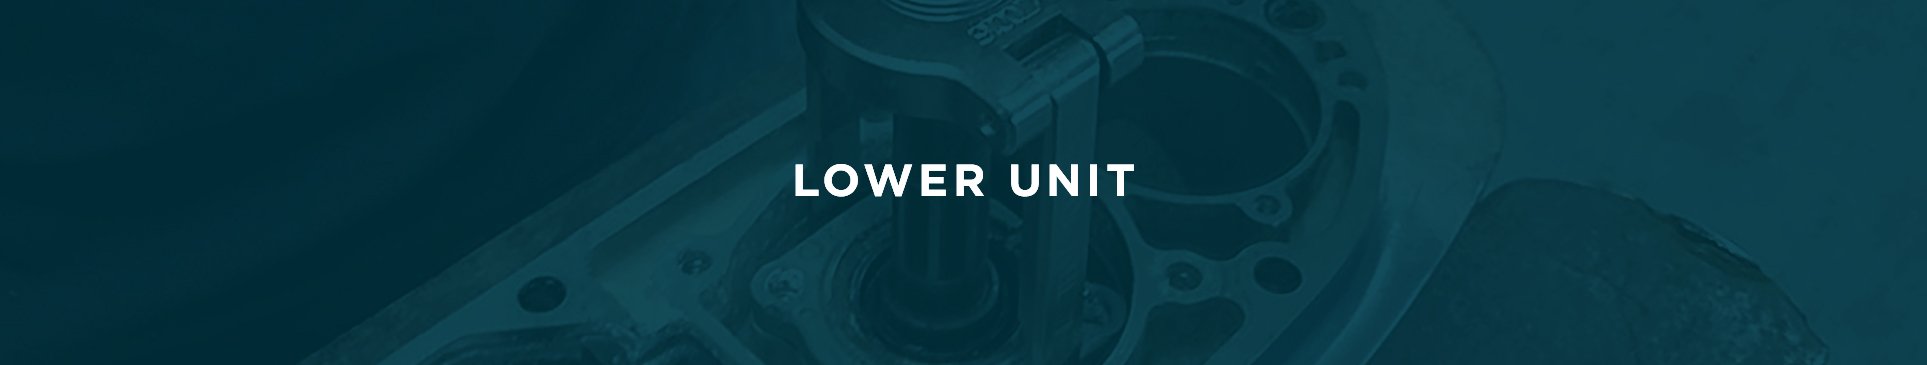 Lower Unit